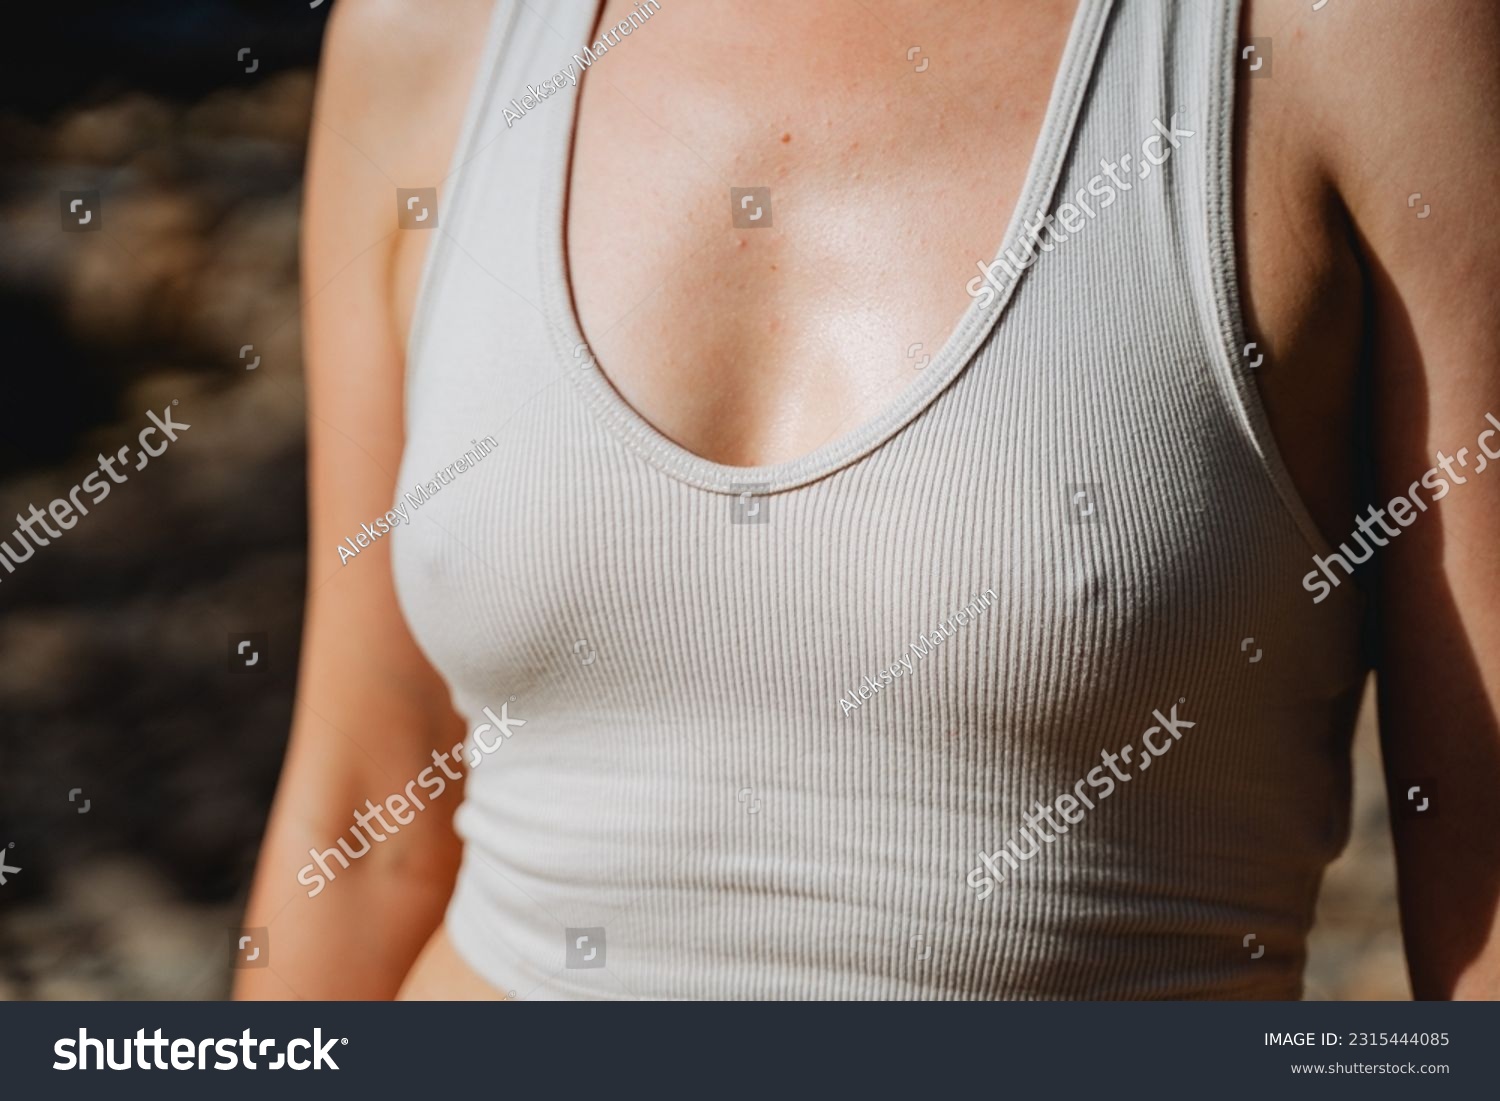 andrea scholl share giant boob nipple gun photos